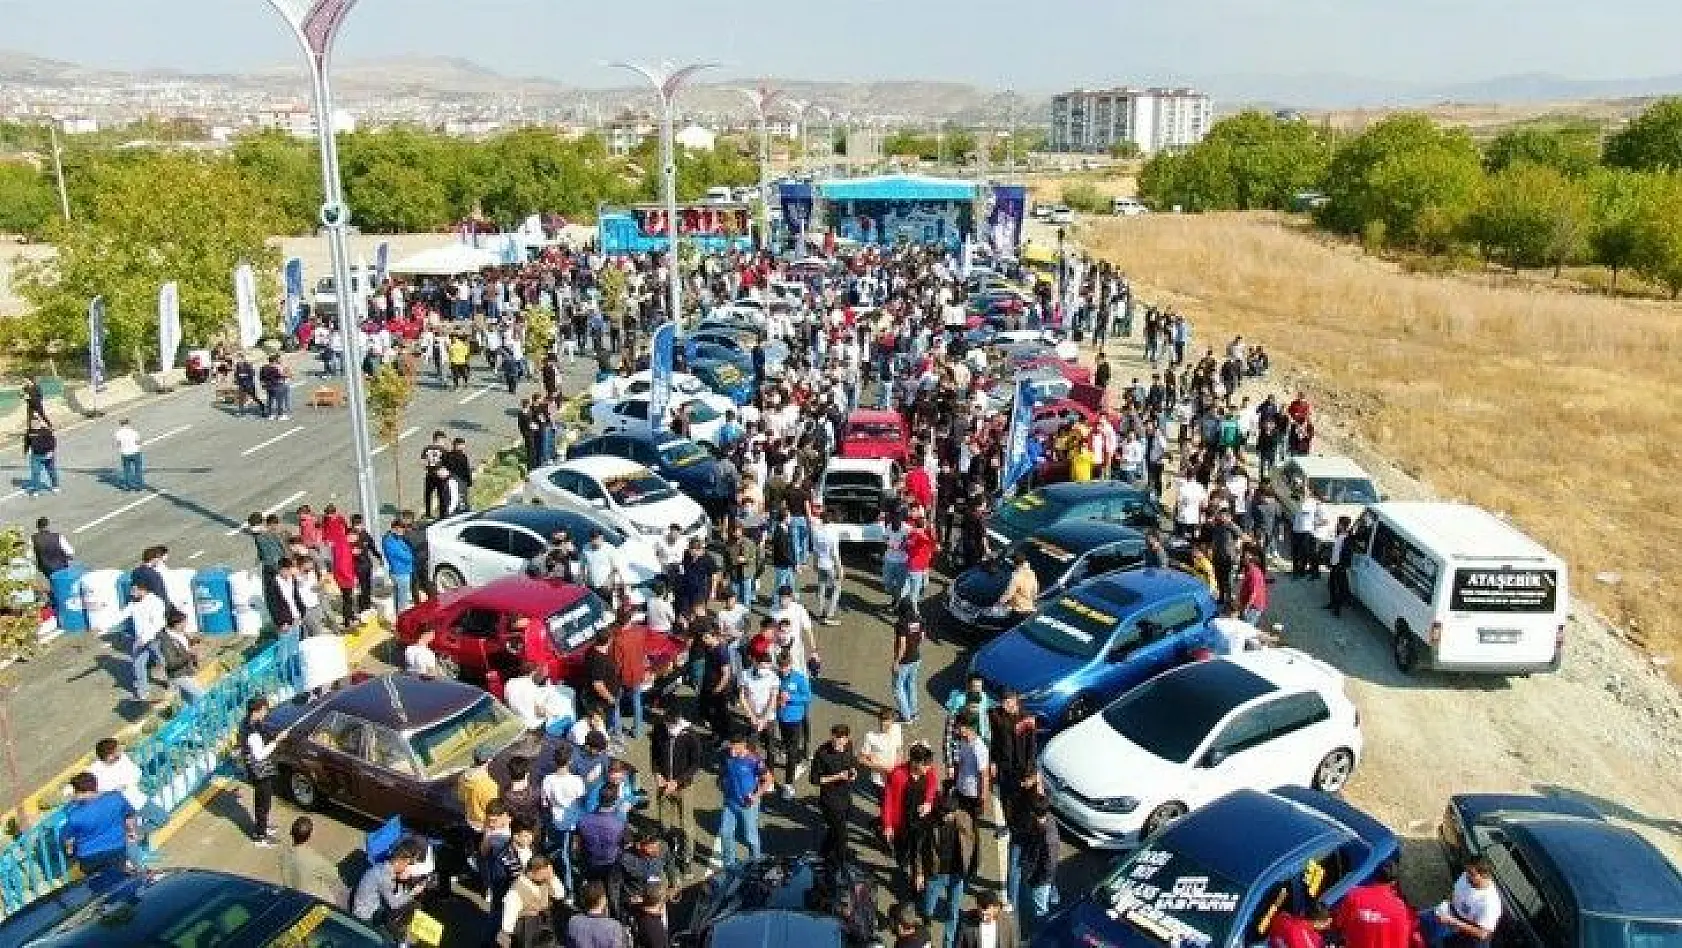 Elazığ'da 'Modifiyeli Araç ve Motosiklet Festivali' renkli görüntülere sahne oldu